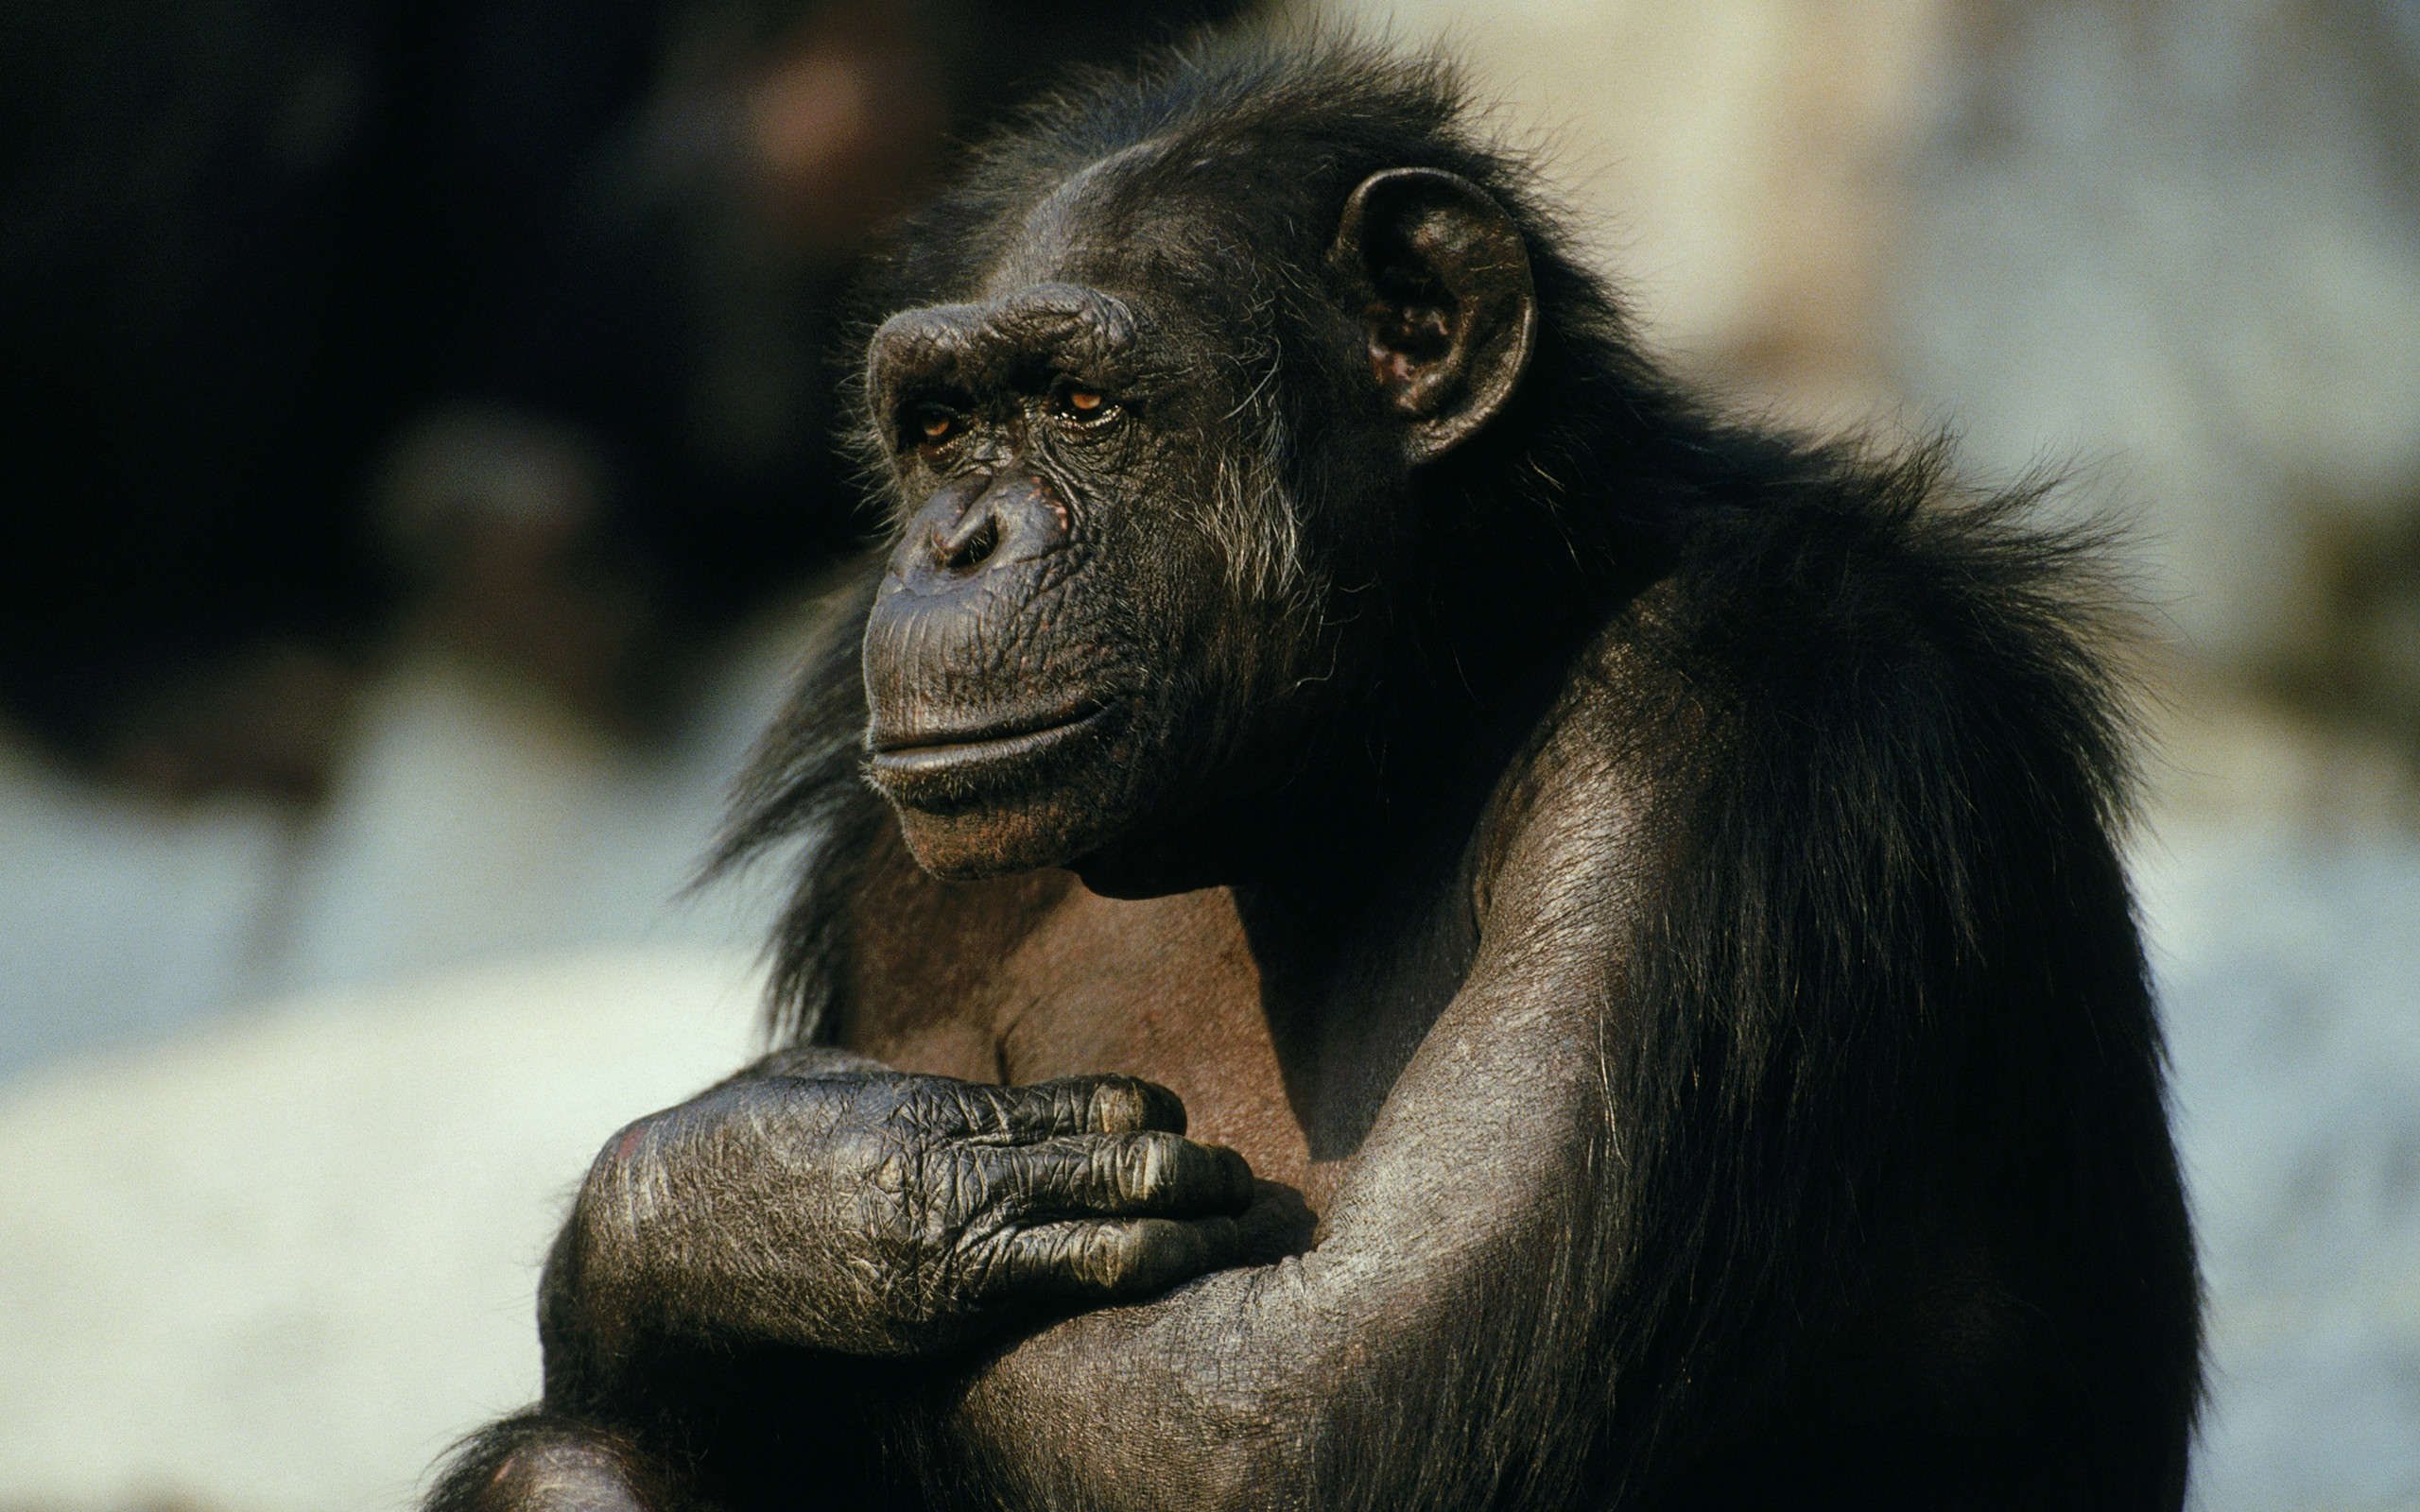 chimpanzee monkey images